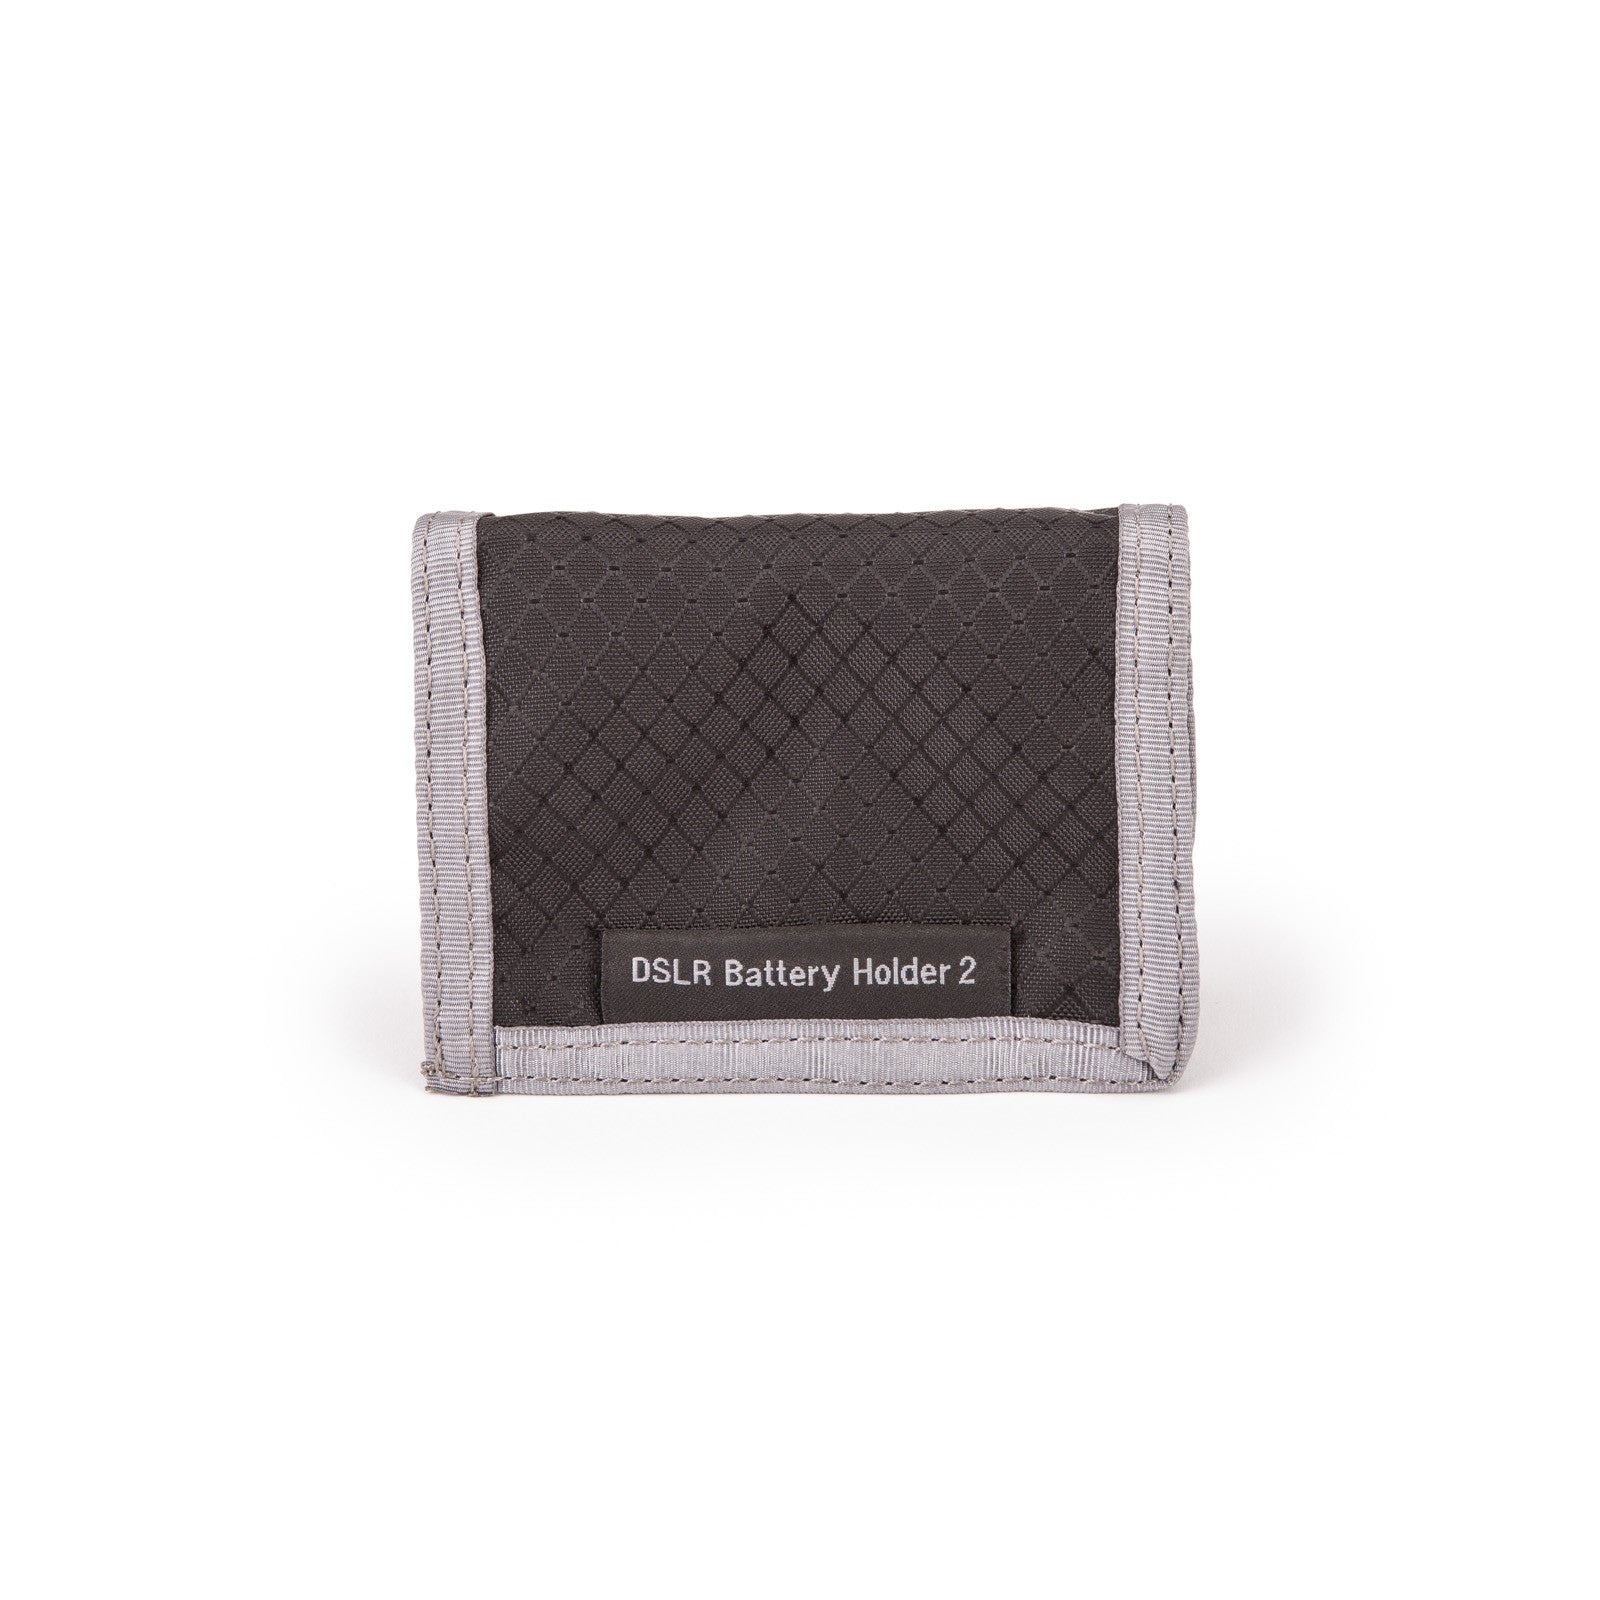 DSLR Battery Holder 2 (Original)